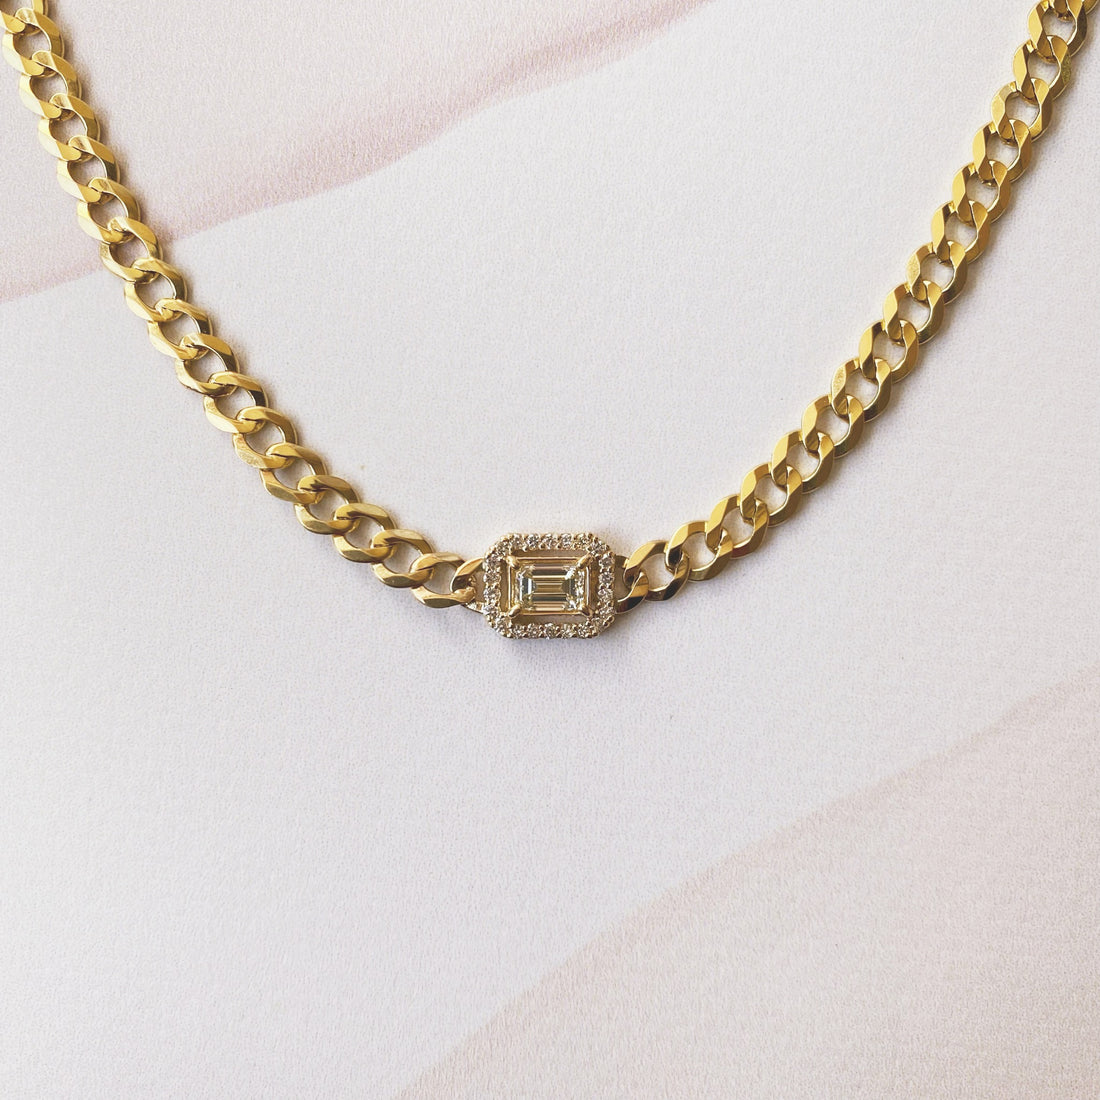 Cuban Link Necklace with Emerald Cut Diamond Center